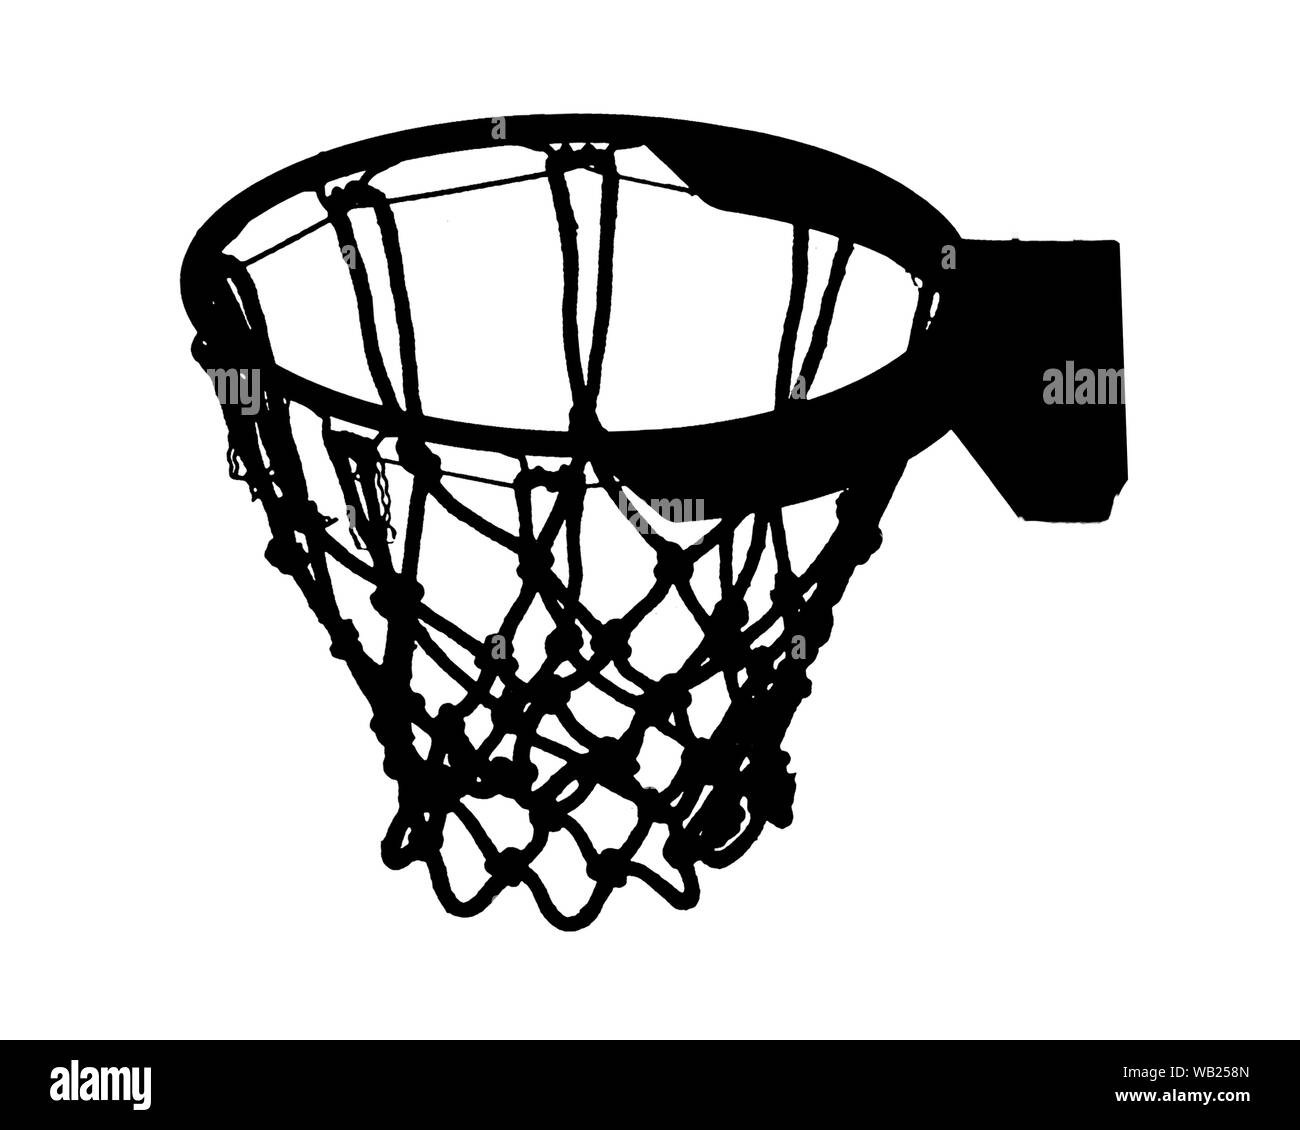 Seitenansicht basketball Korb Grafik Silhouette auf weißem Hintergrund Stockfoto